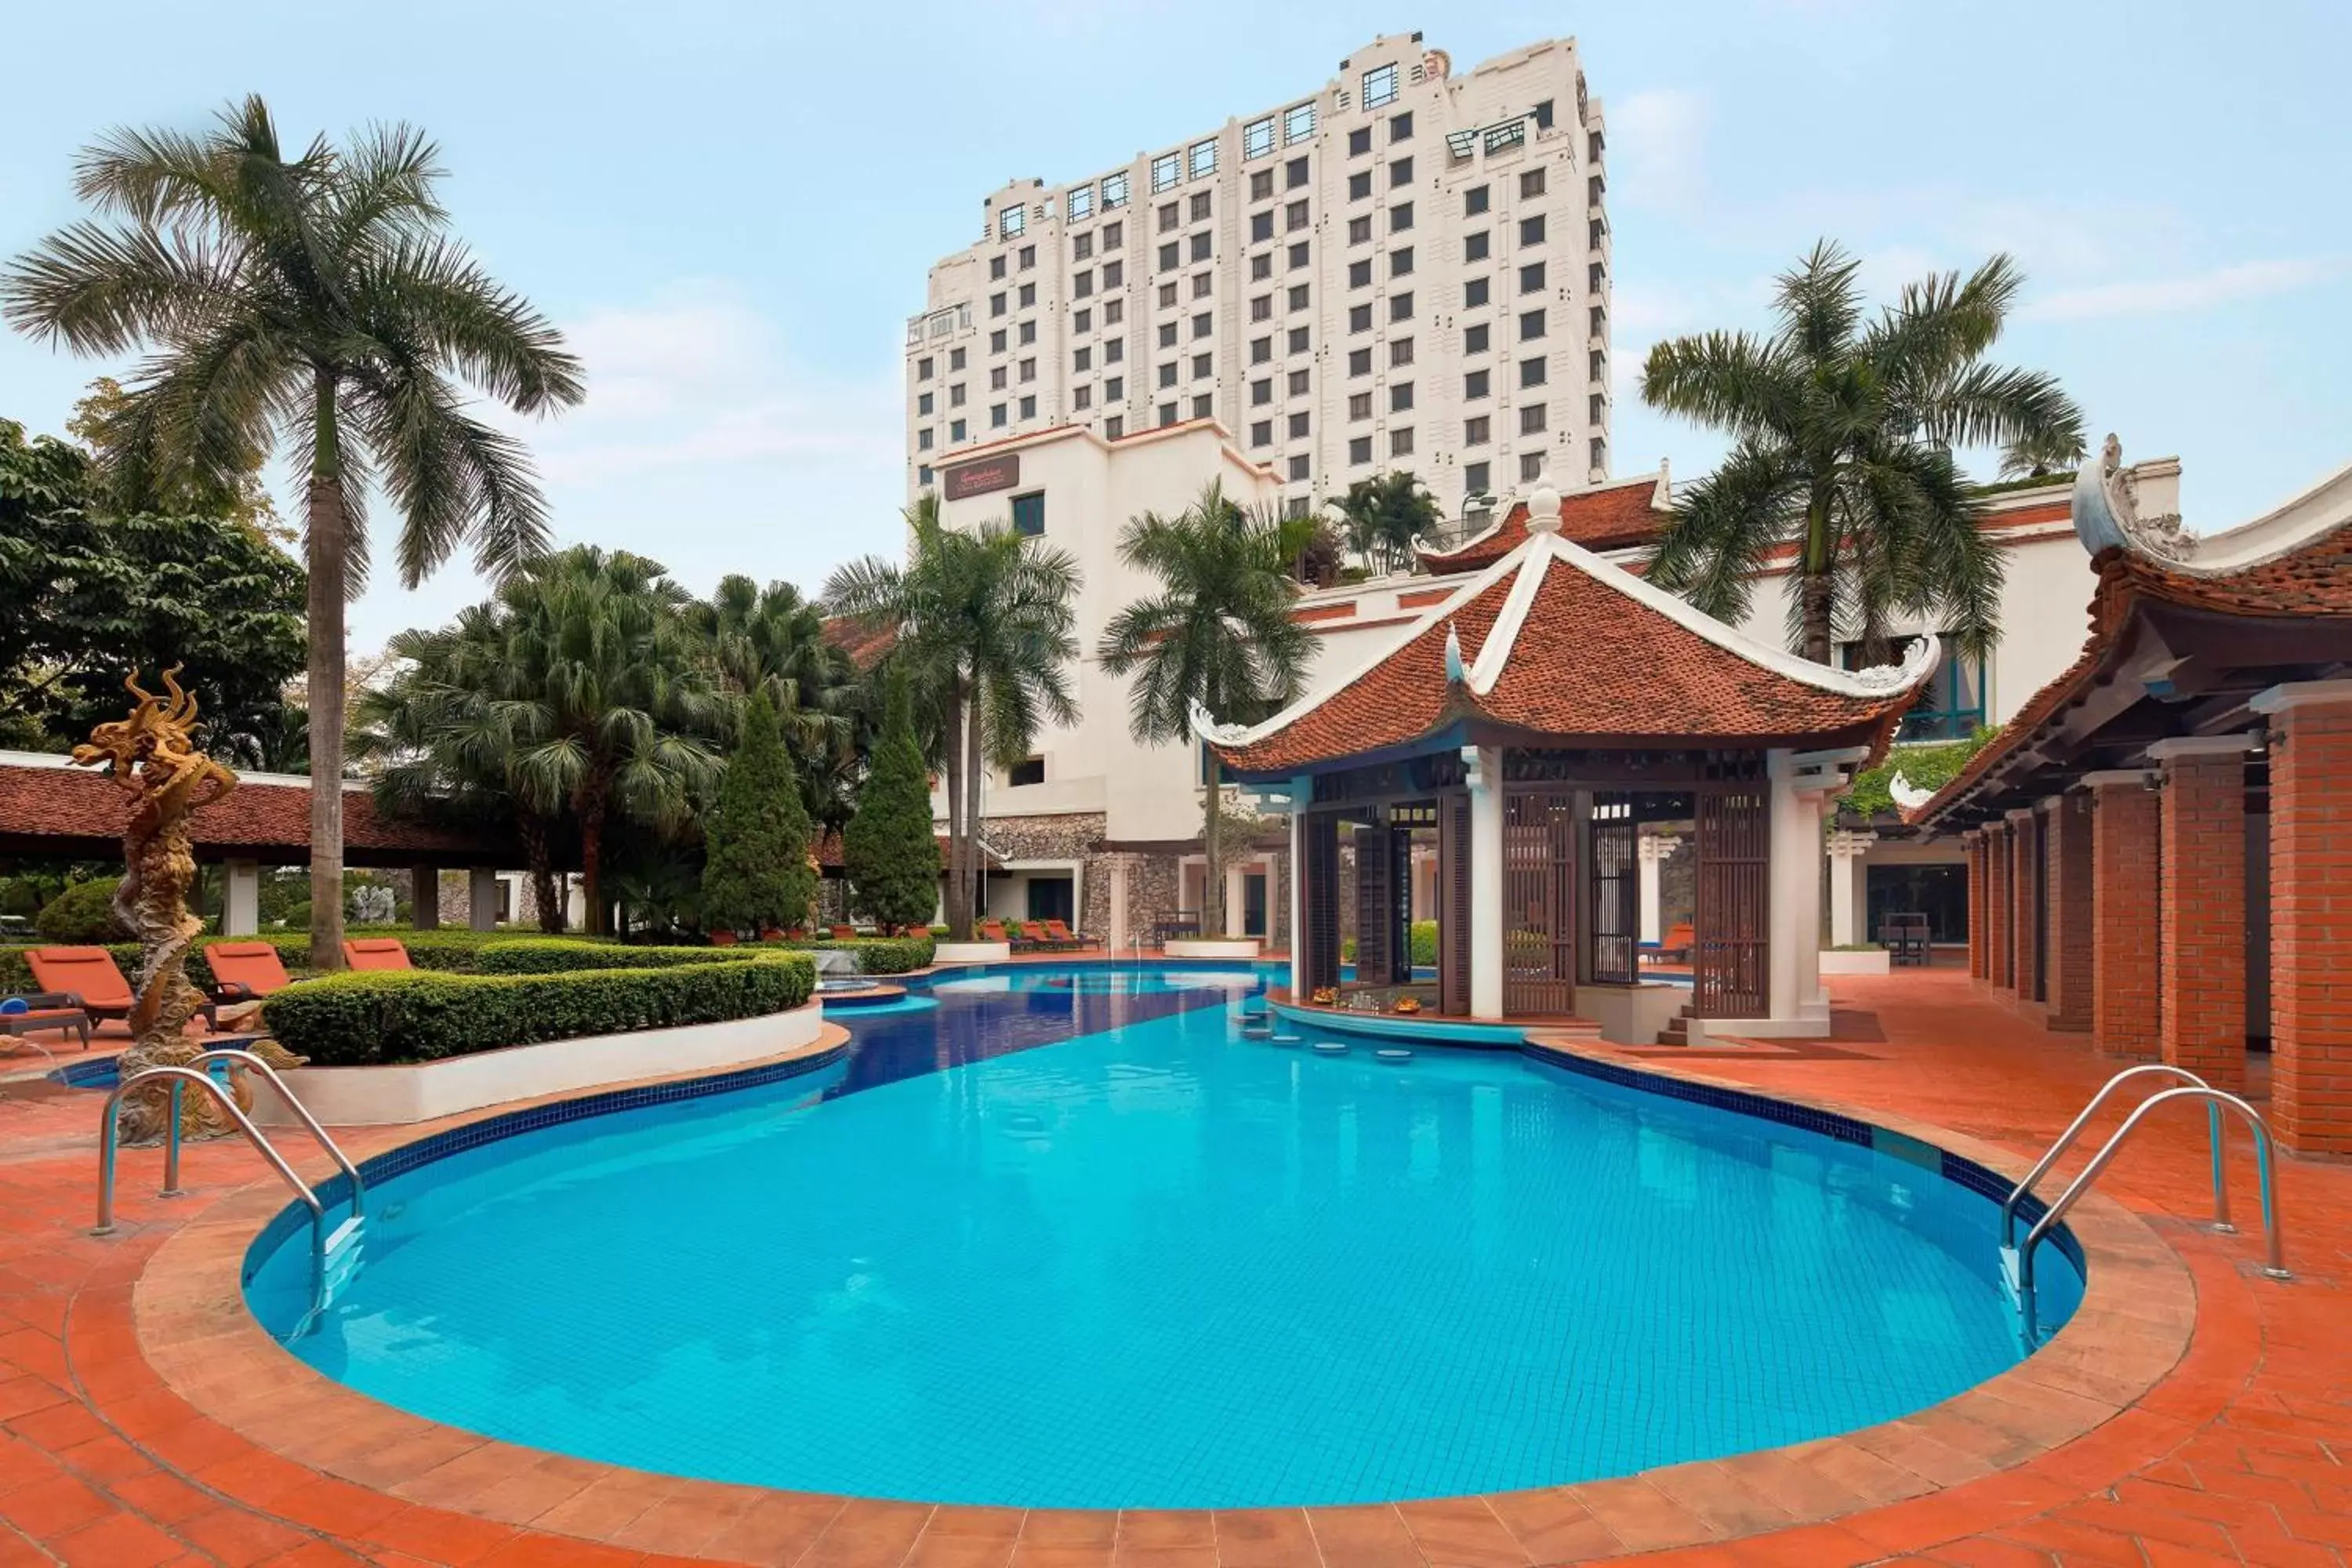 Swimming Pool in Sheraton Hanoi Hotel